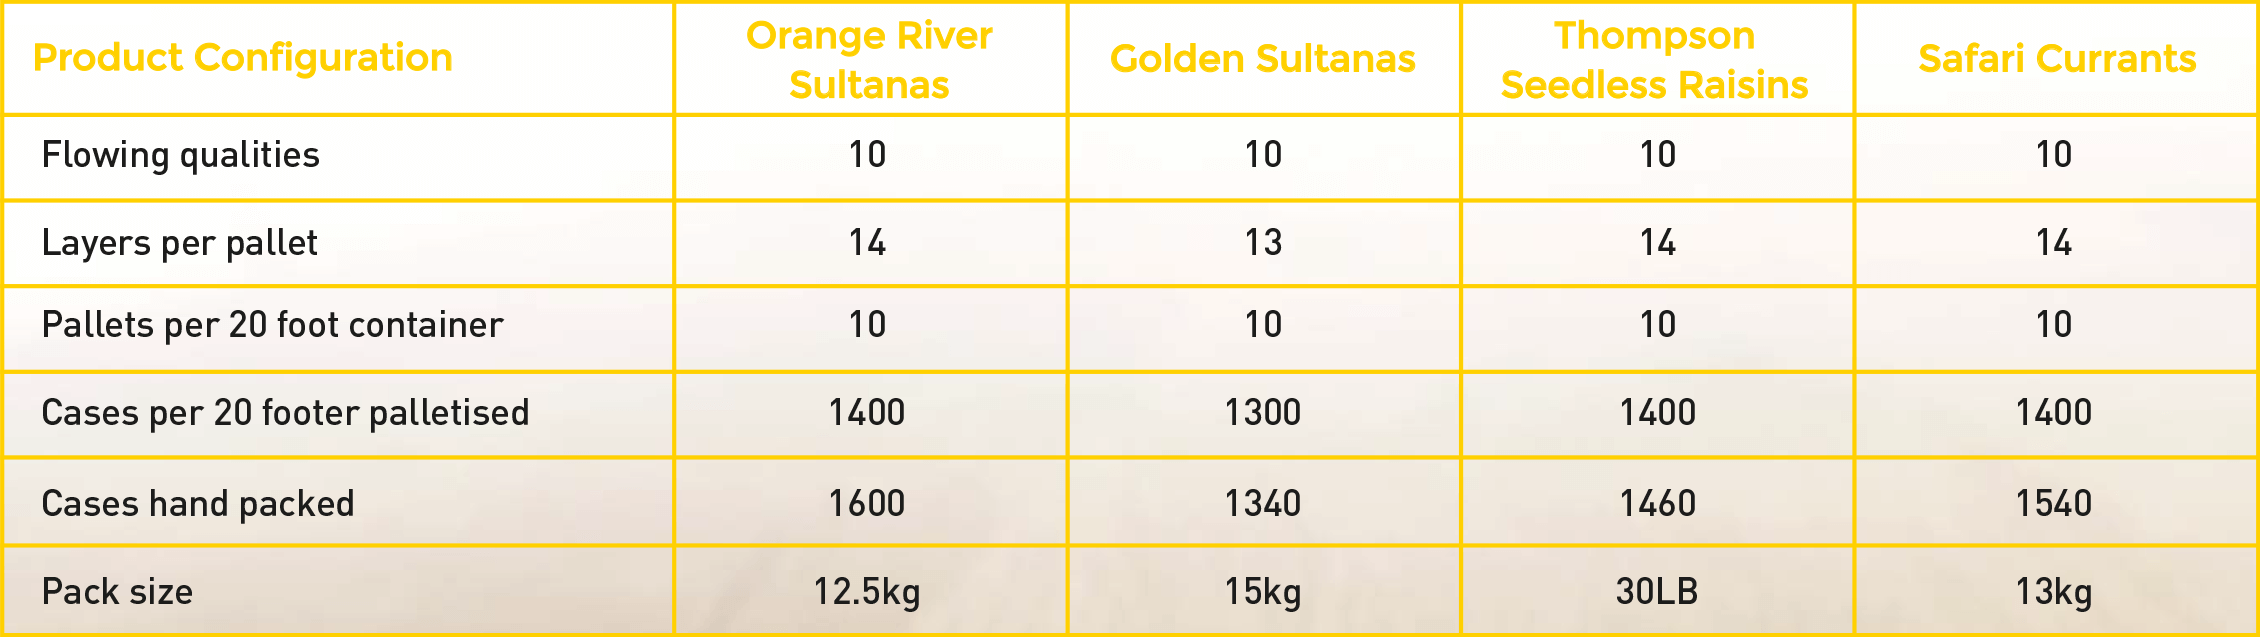 Dried Golden Sultanas